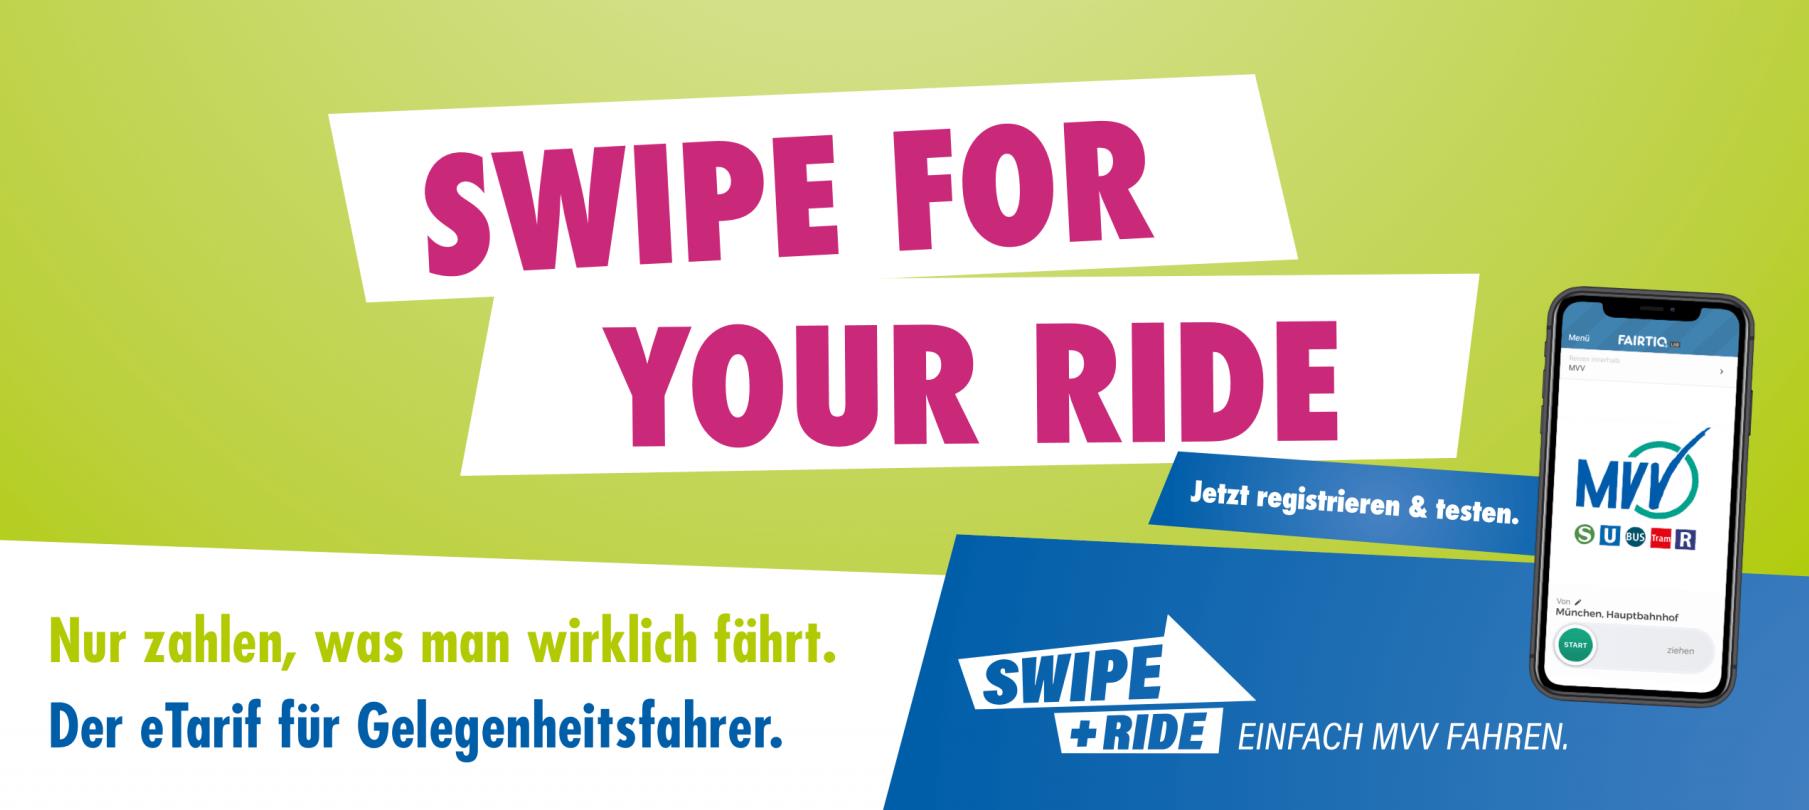 SWIPE + RIDE - der eTarif für Gelegenheitsfahrer.